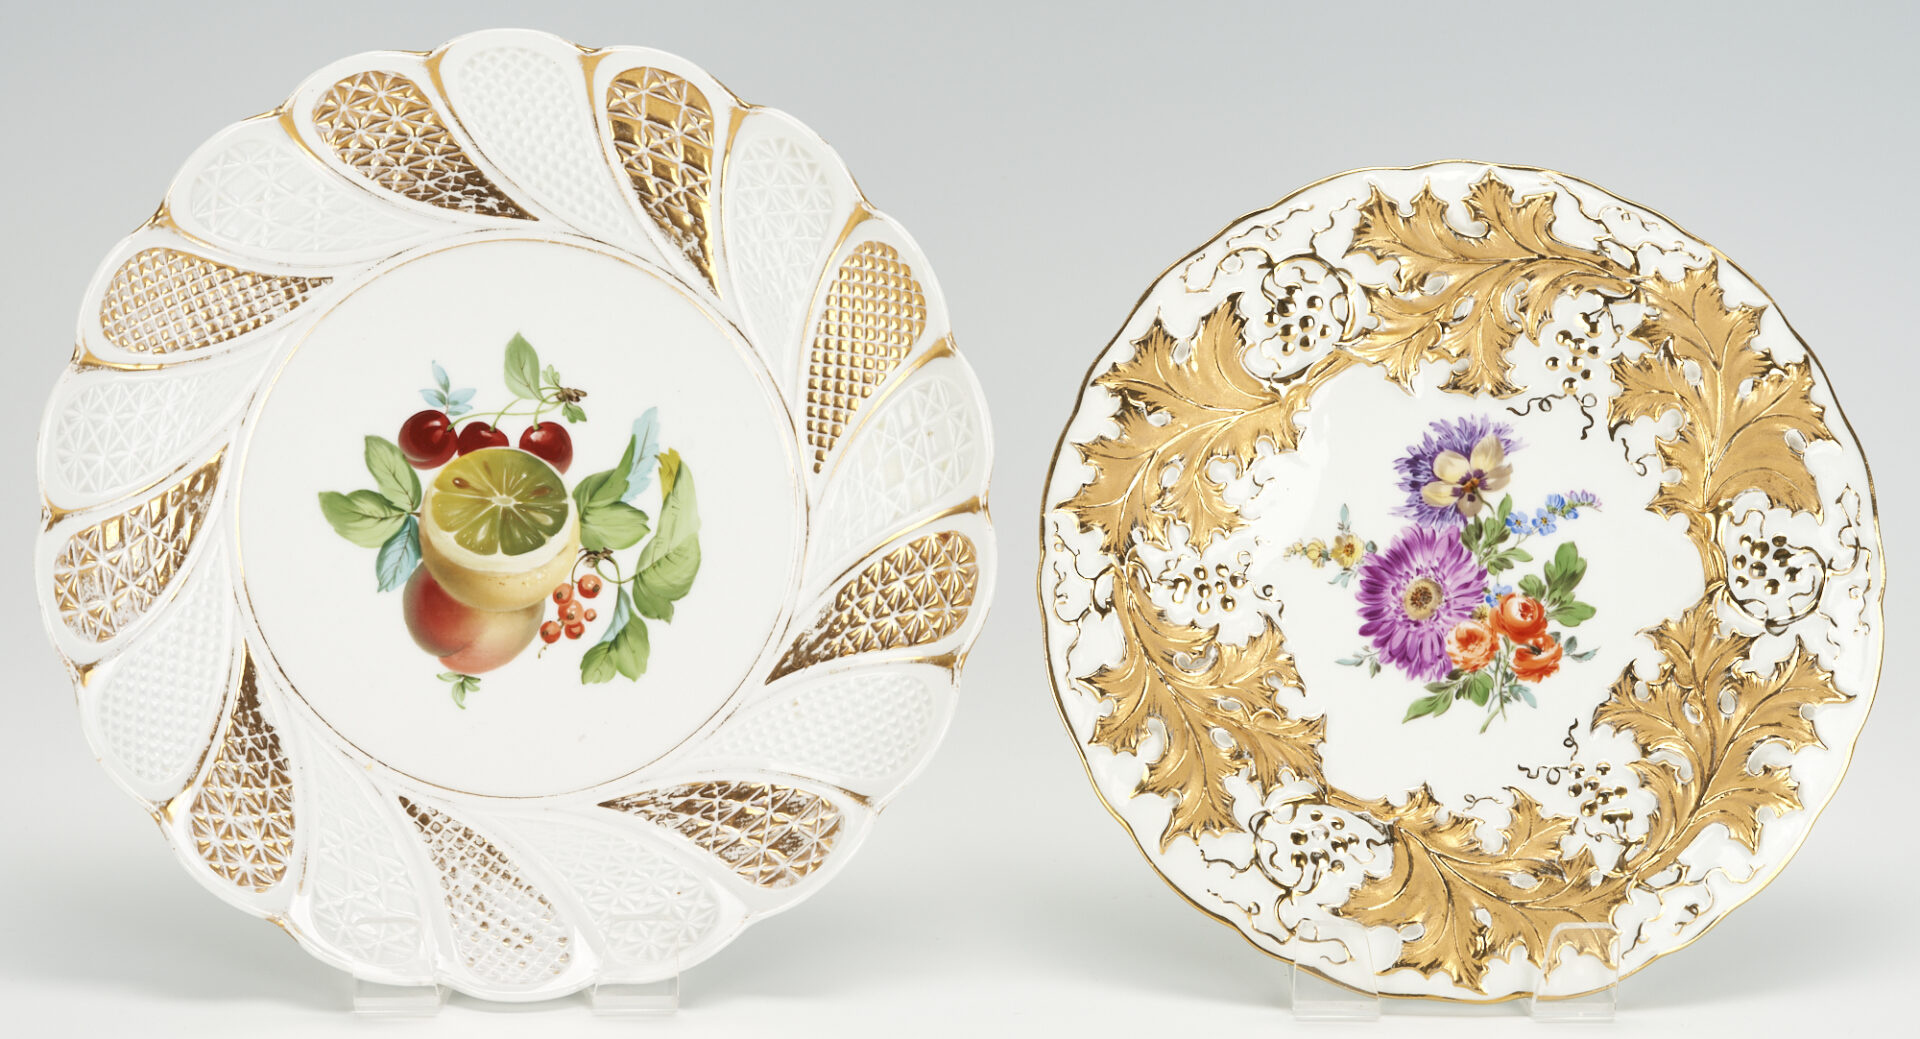 Lot 268: 7 pcs. Meissen Porcelain, incl. Large Platter, Plates, Cups & Saucers